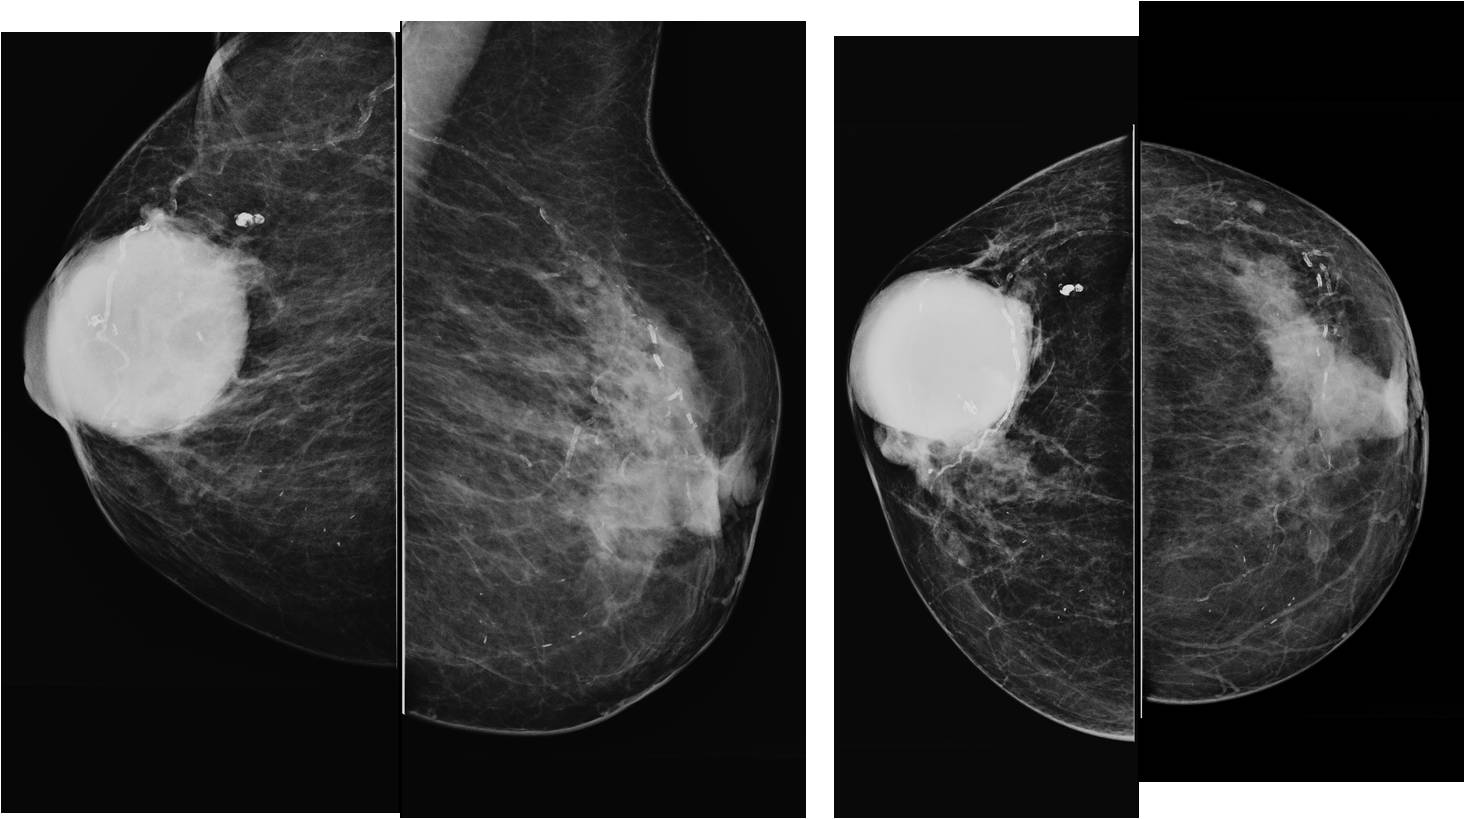 Birads 2 что означает. Фиброзно кистозная мастопатия BL-rads 2. Фиброзно кистозная мастопатия молочной железы bi-rads-4a. Бирадс 4с маммография. Категория bi rads 4 маммография.